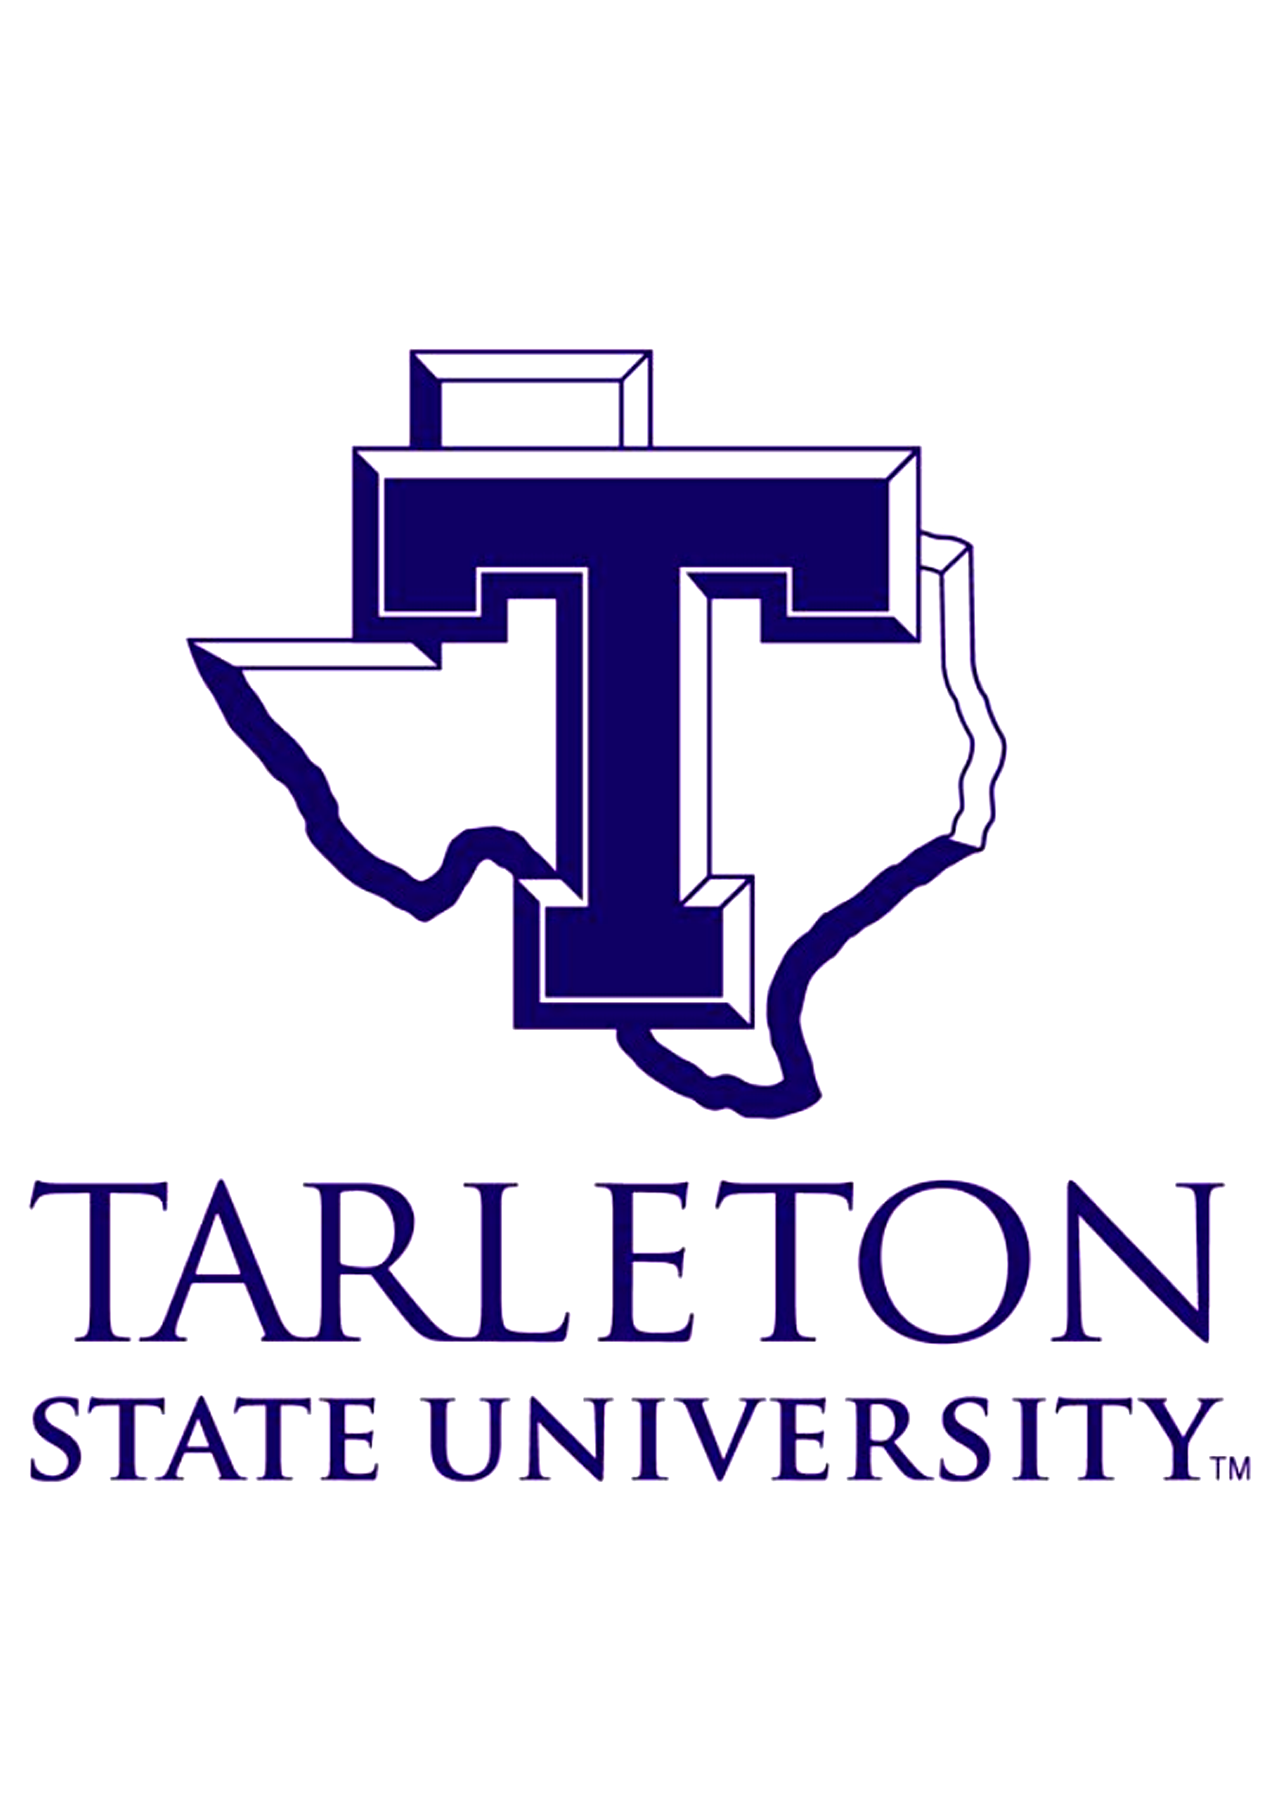 Tarleton State University